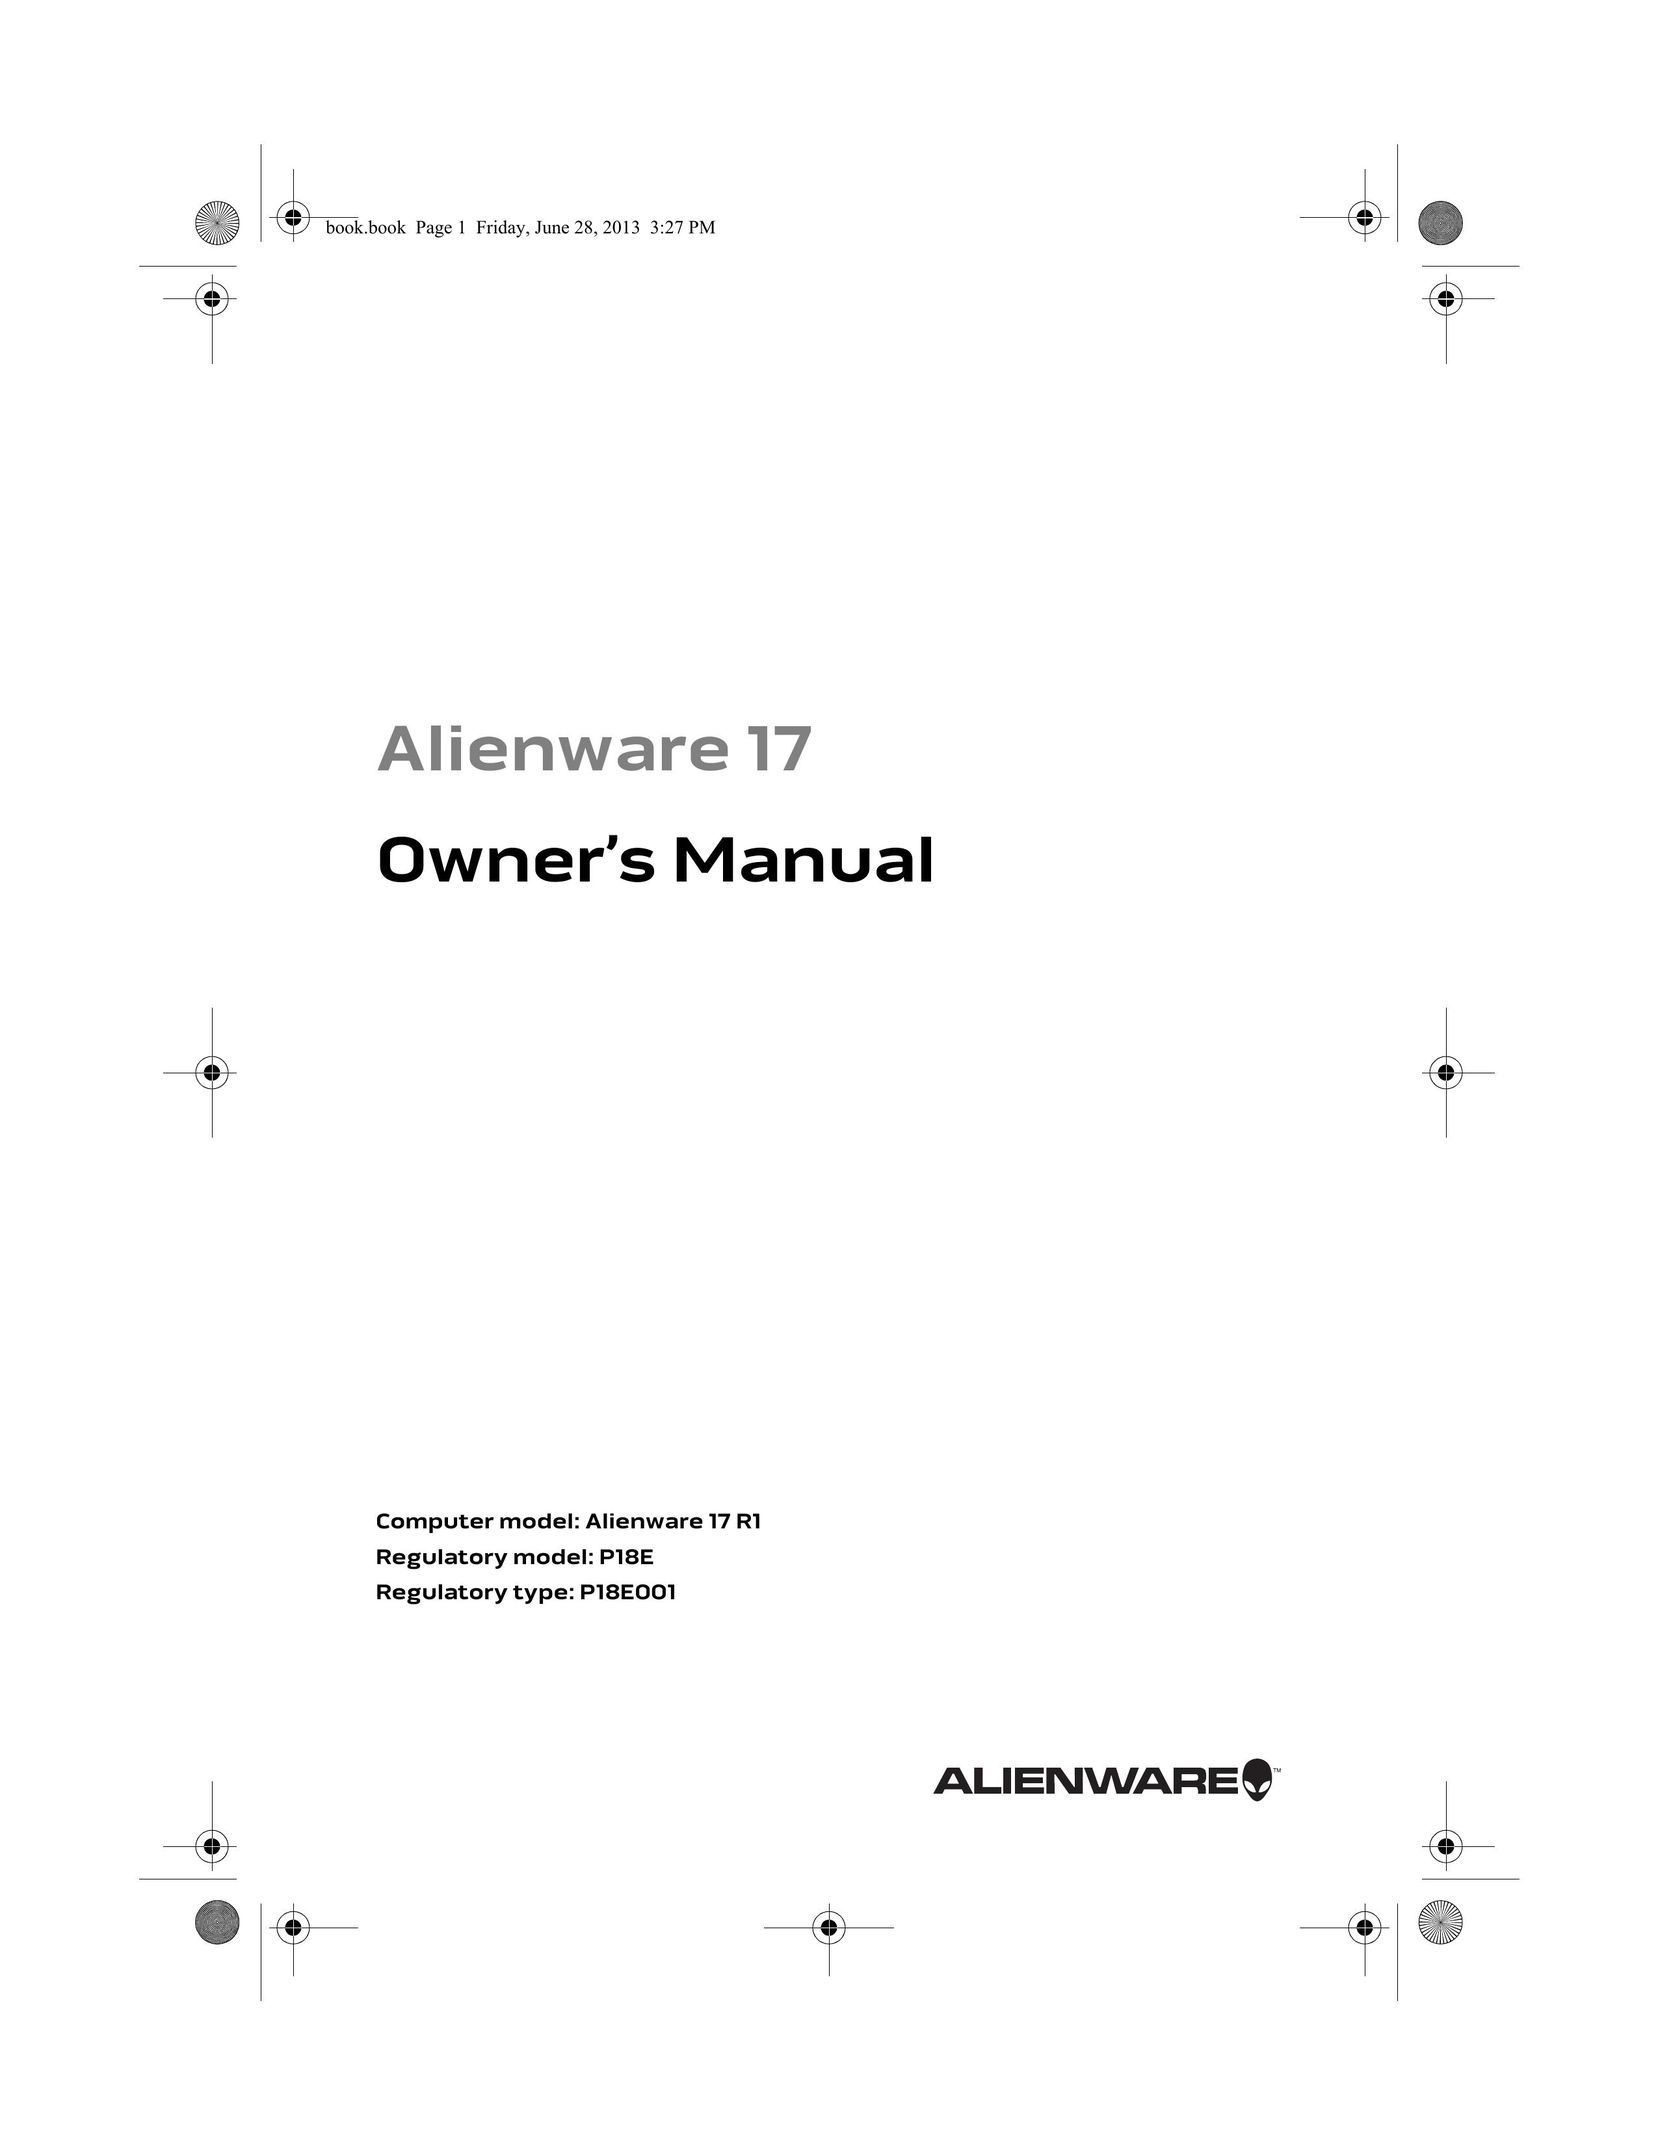 Alienware P18E Personal Computer User Manual